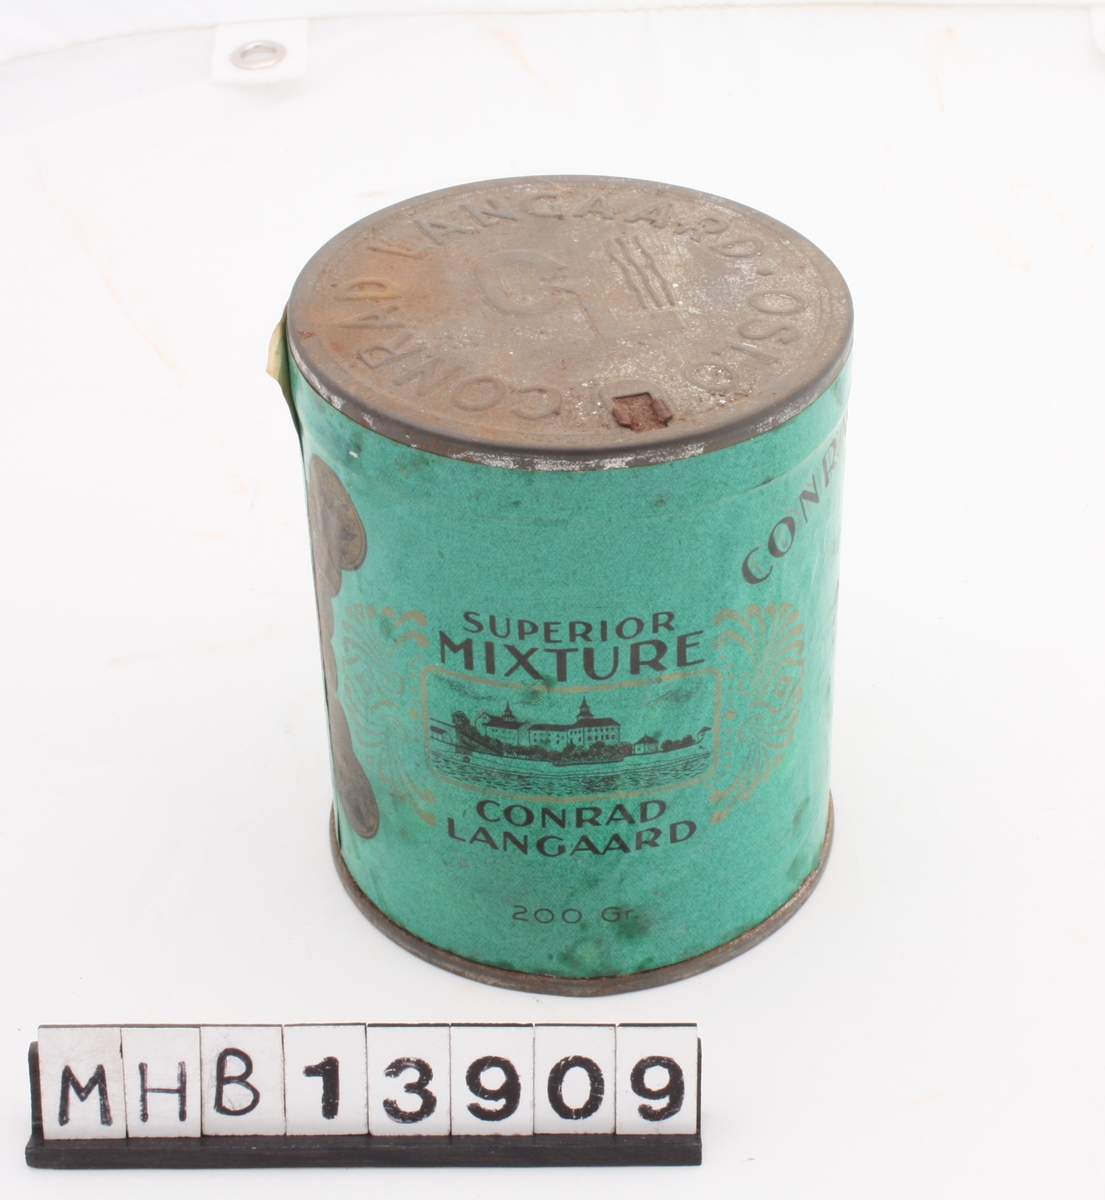 Sylinderformet tobakksboks av metall, med metallokk og papiretikette som i helhet dekker boksens stående sider.